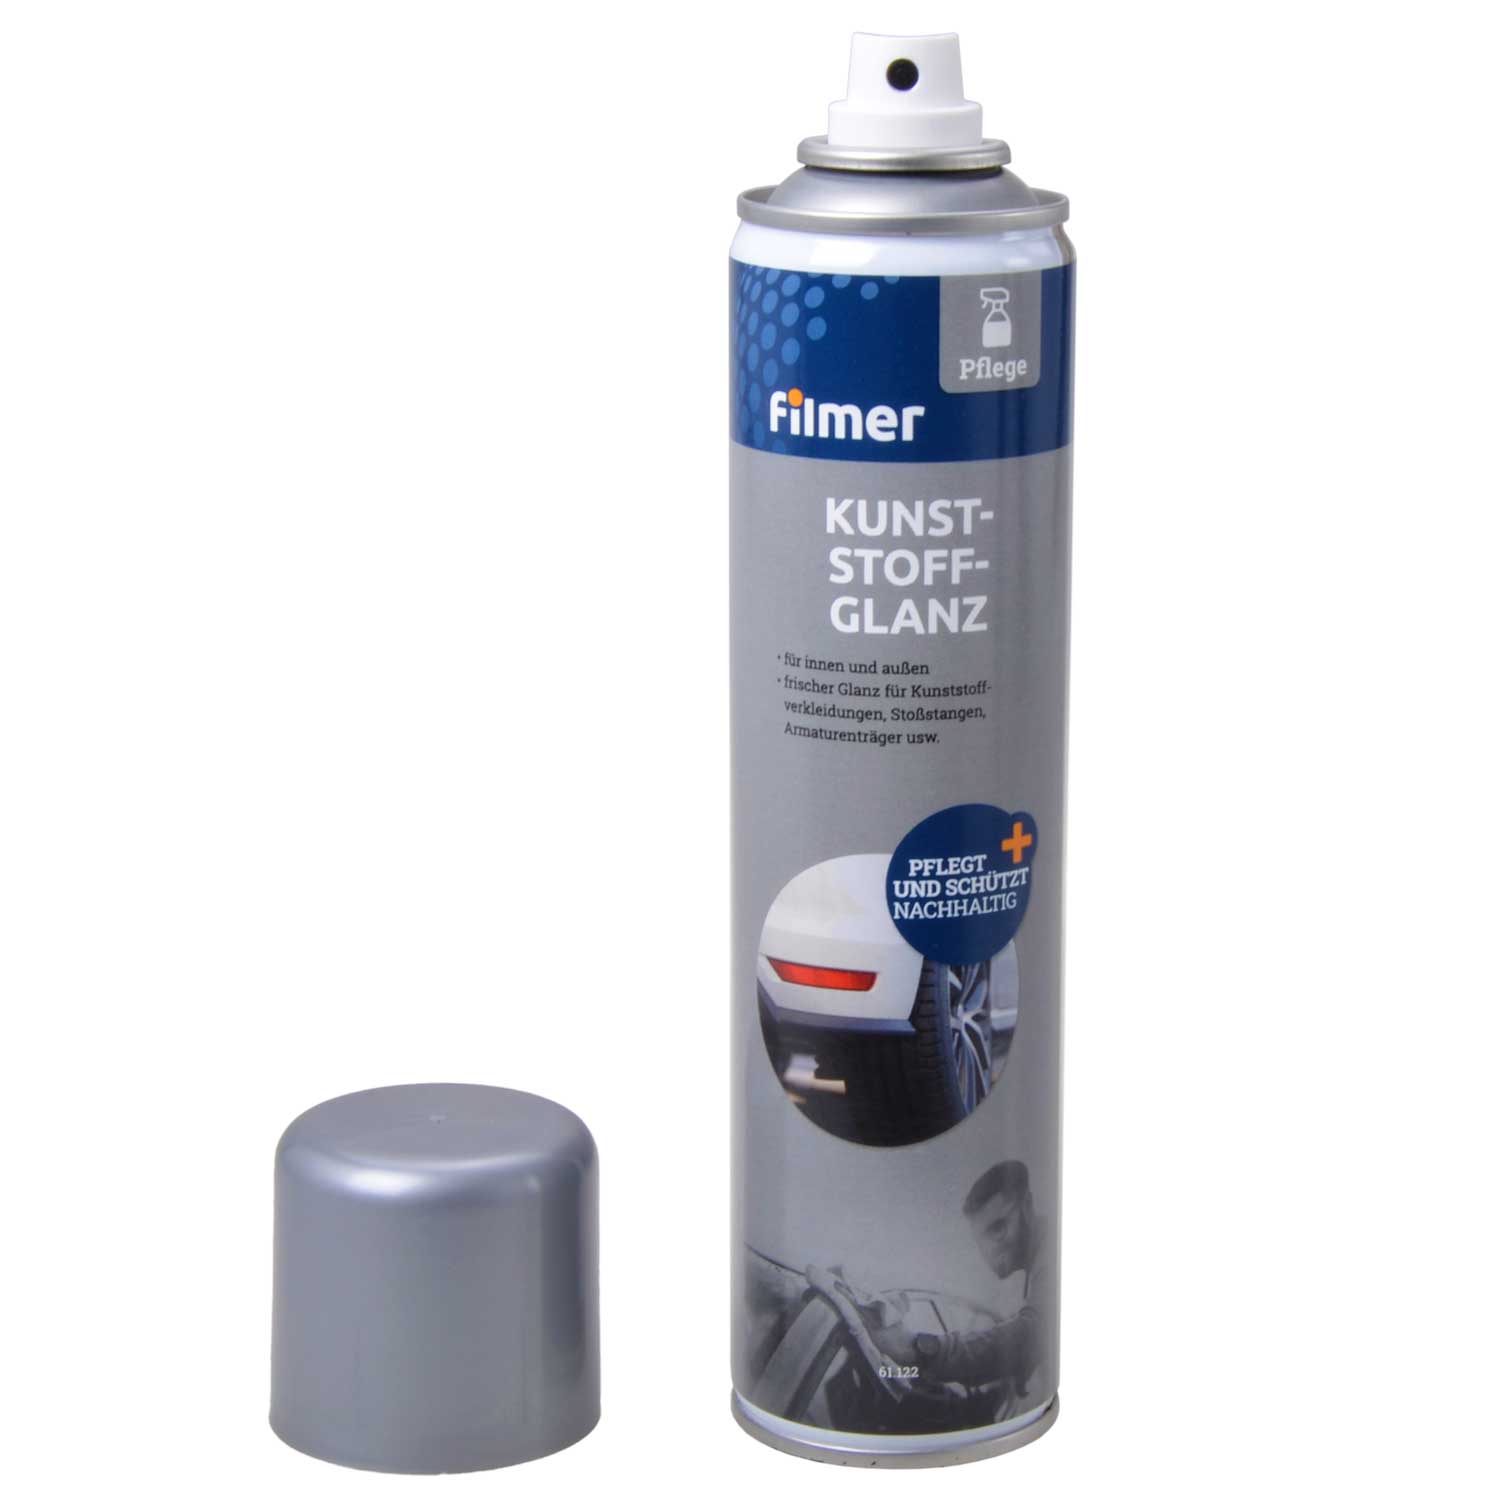 Kunststoffglanz-Spray 300 ml Begr. Menge gem. Kap. 3.4